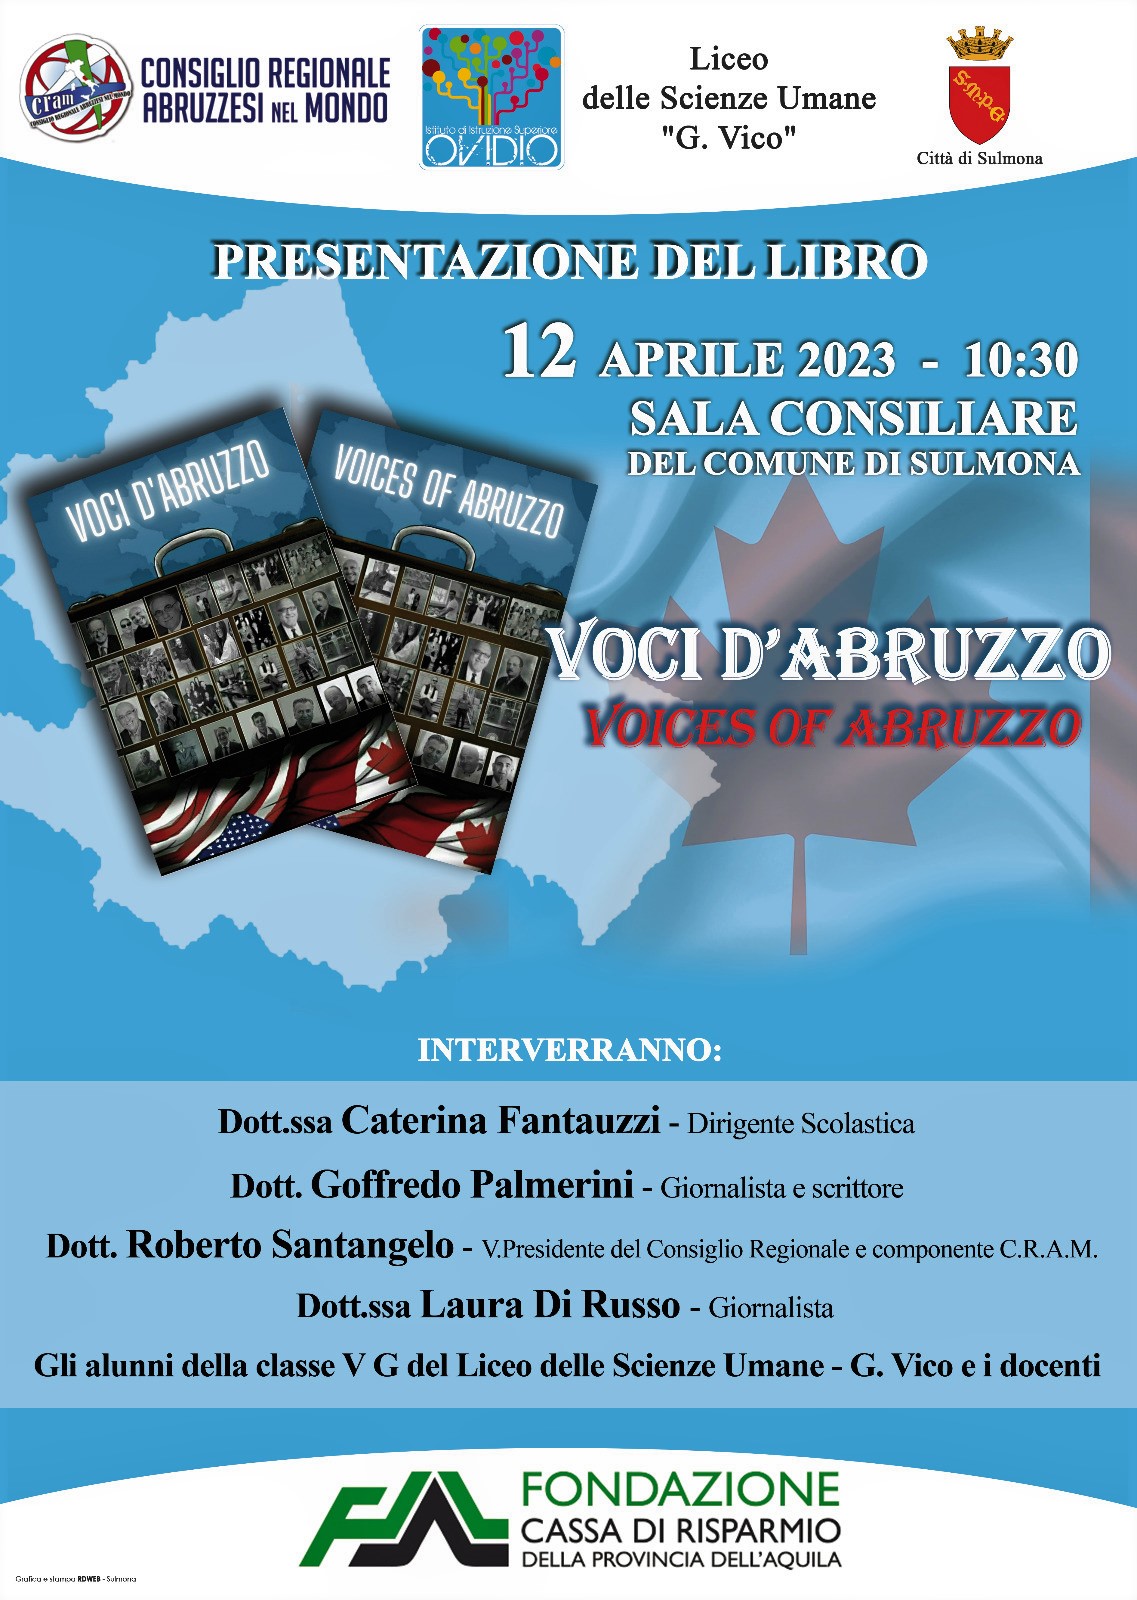 “Voci D’Abruzzo”,emigrati in USA e Canada raccontati da studenti del Liceo “G.Vico” di Sulmona